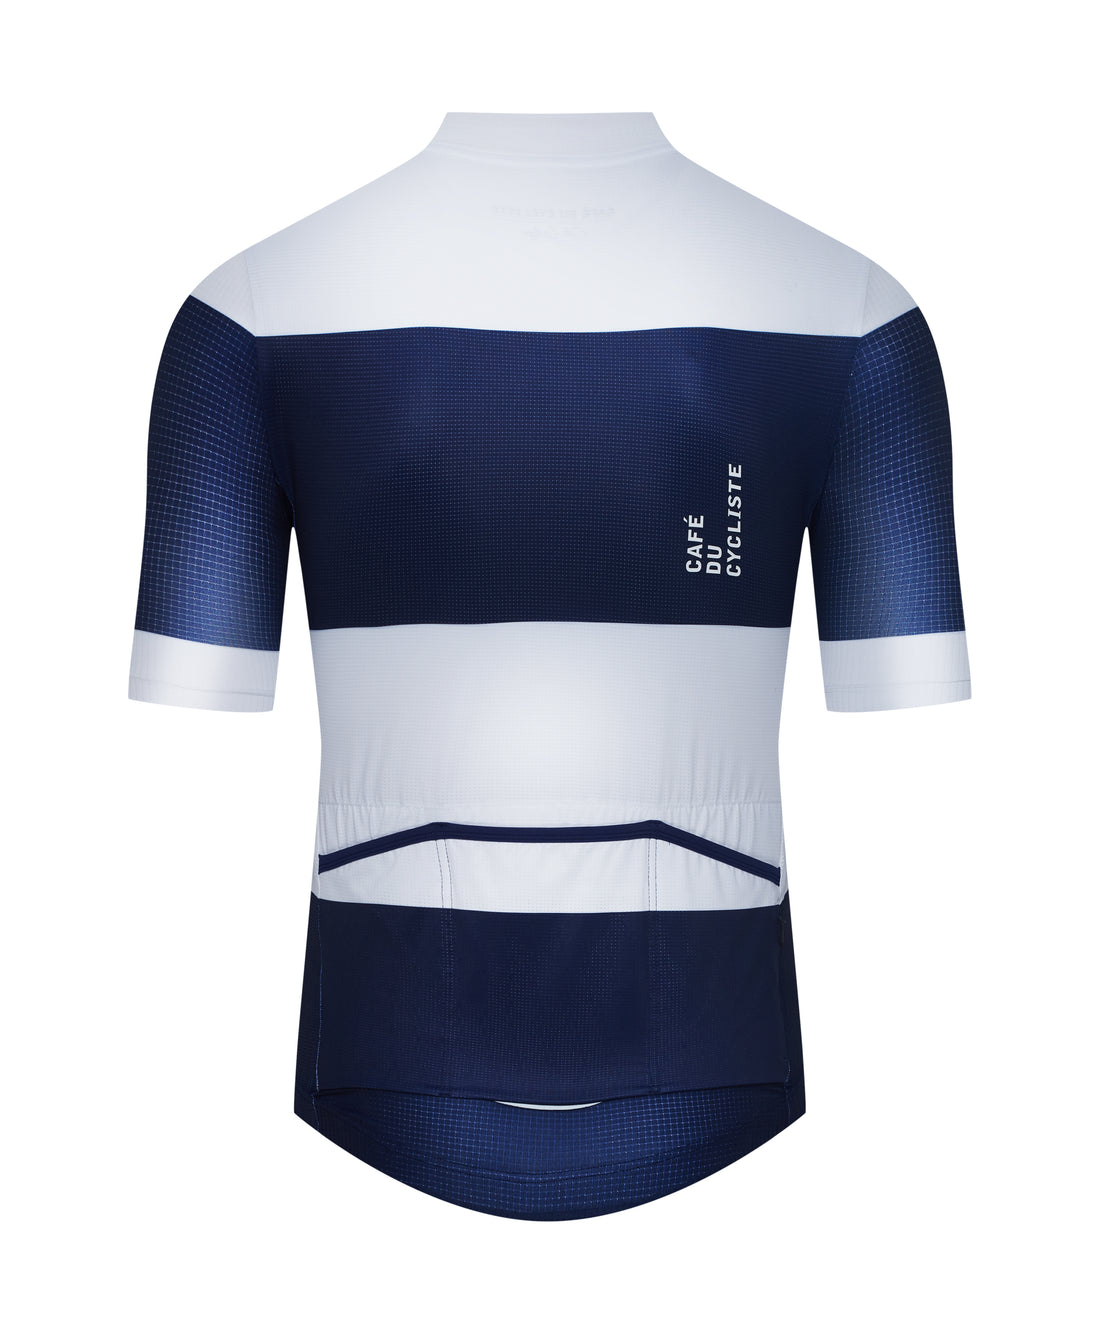 Café du Cycliste Angeline Men's Ultralight Cycling Jersey Radtrikot Navy White